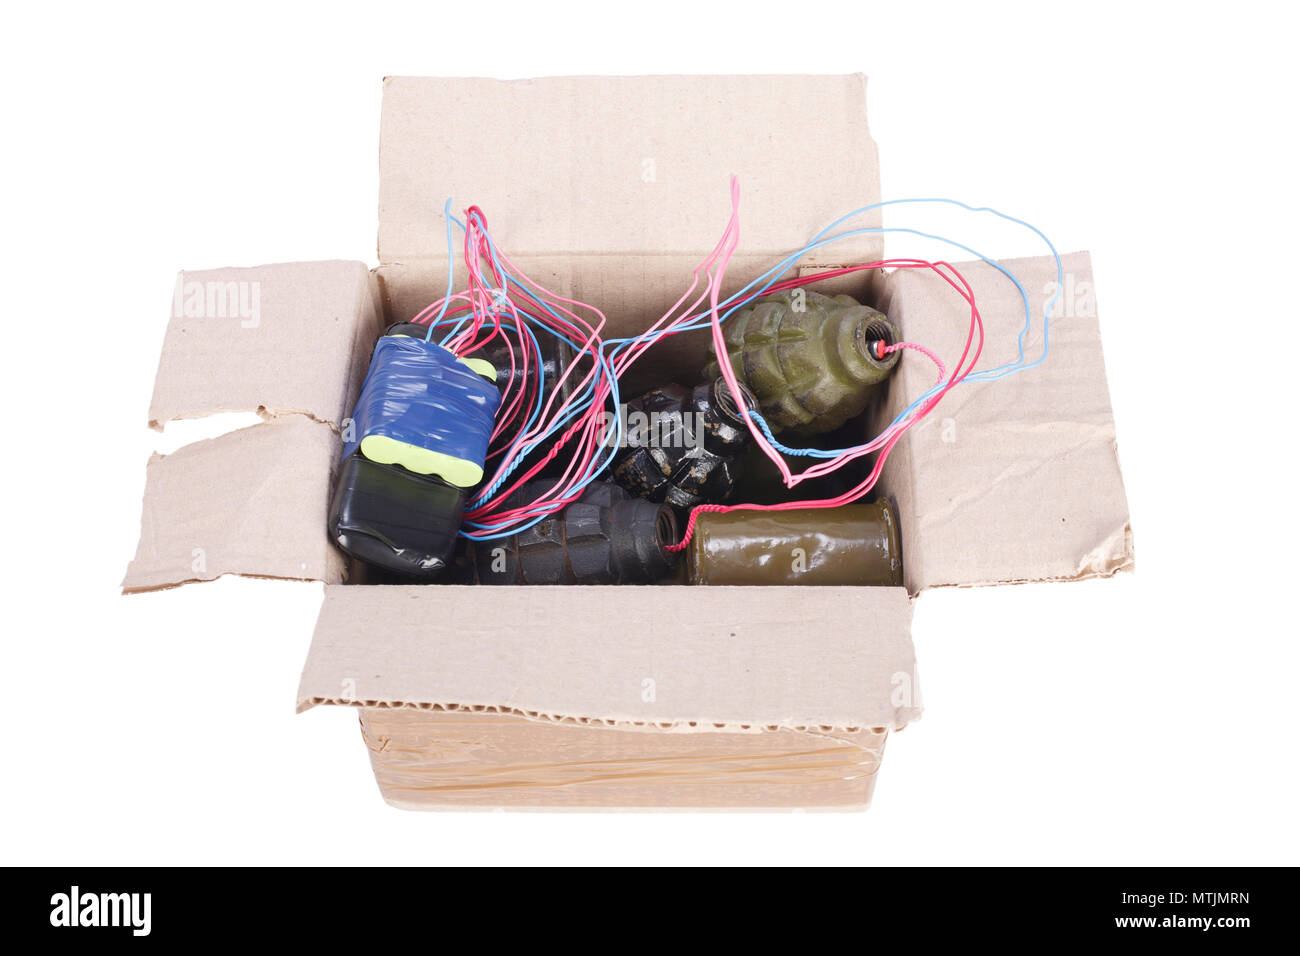 IED - improvvisato dispositivo esplosivo in mailbox isolato su bianco Foto Stock